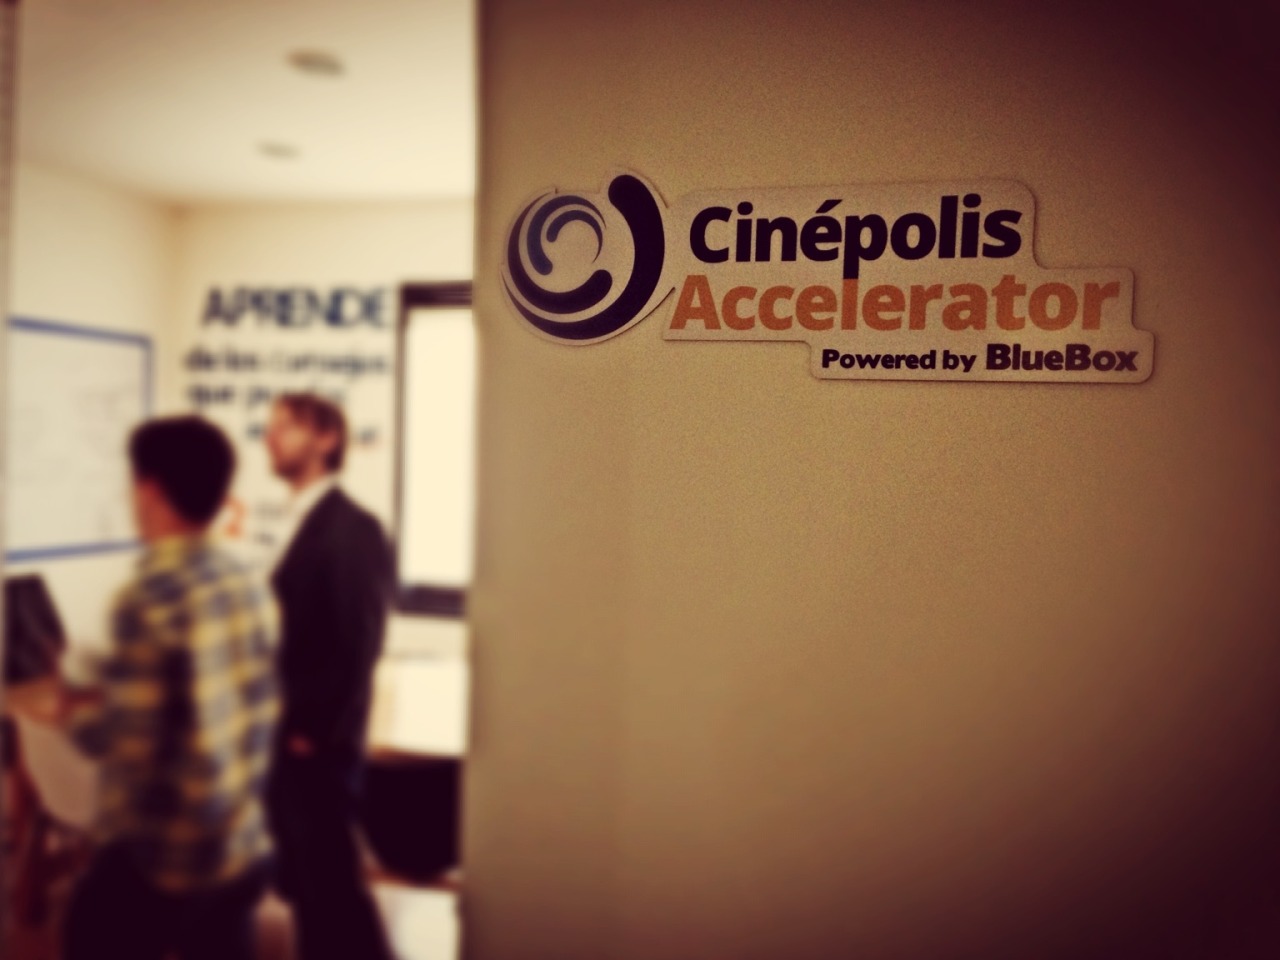 Cinépolis Accelerator cuarta generación en promover ideas innovadoras